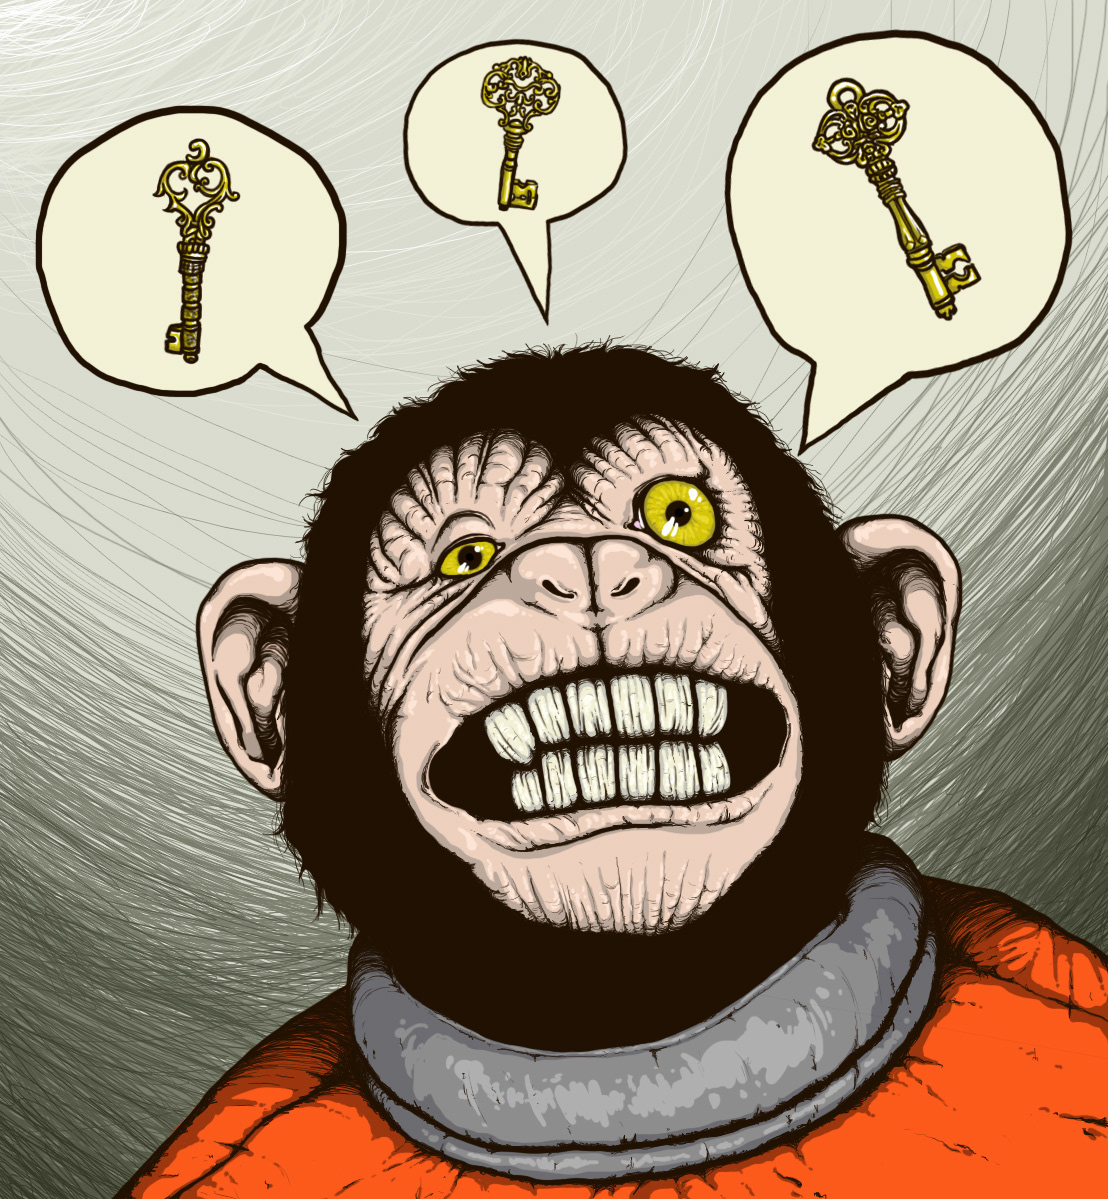 monkey key astronaut insane crazy